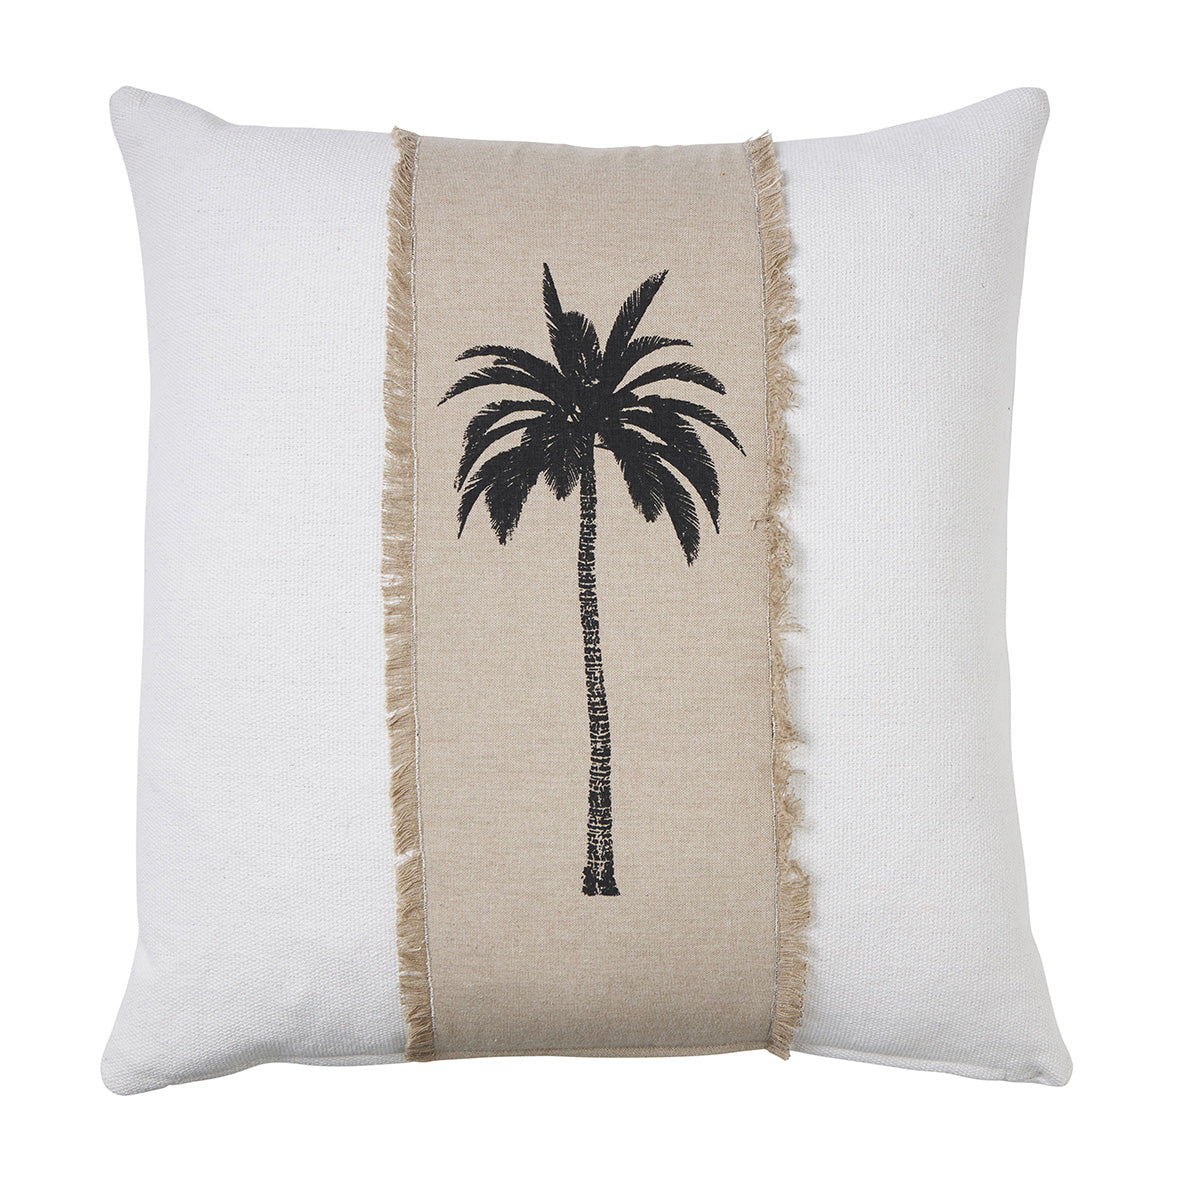 Havana Palm Cushion